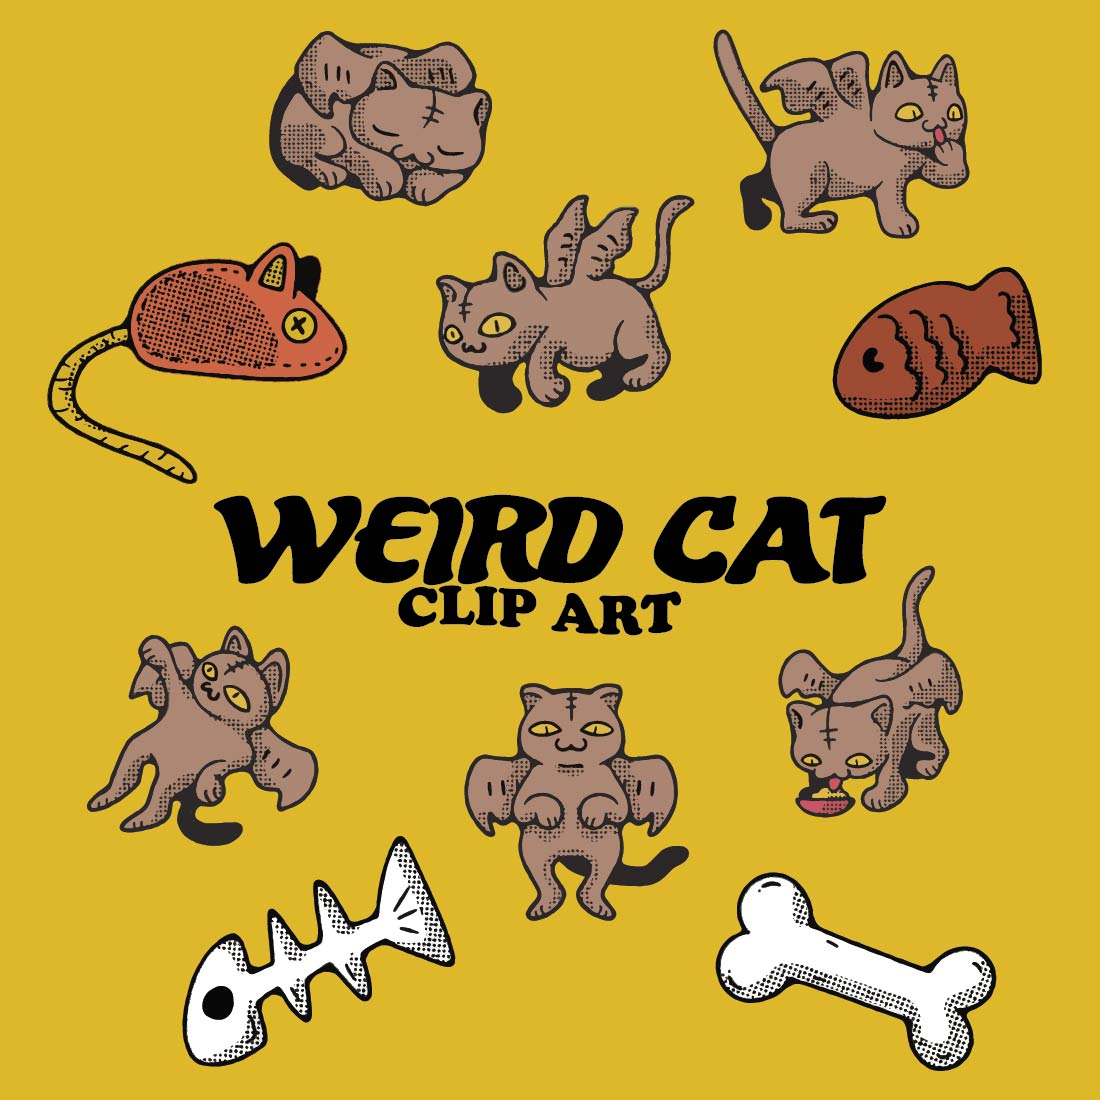 Weird Cat Doodles Clip Art cover image.